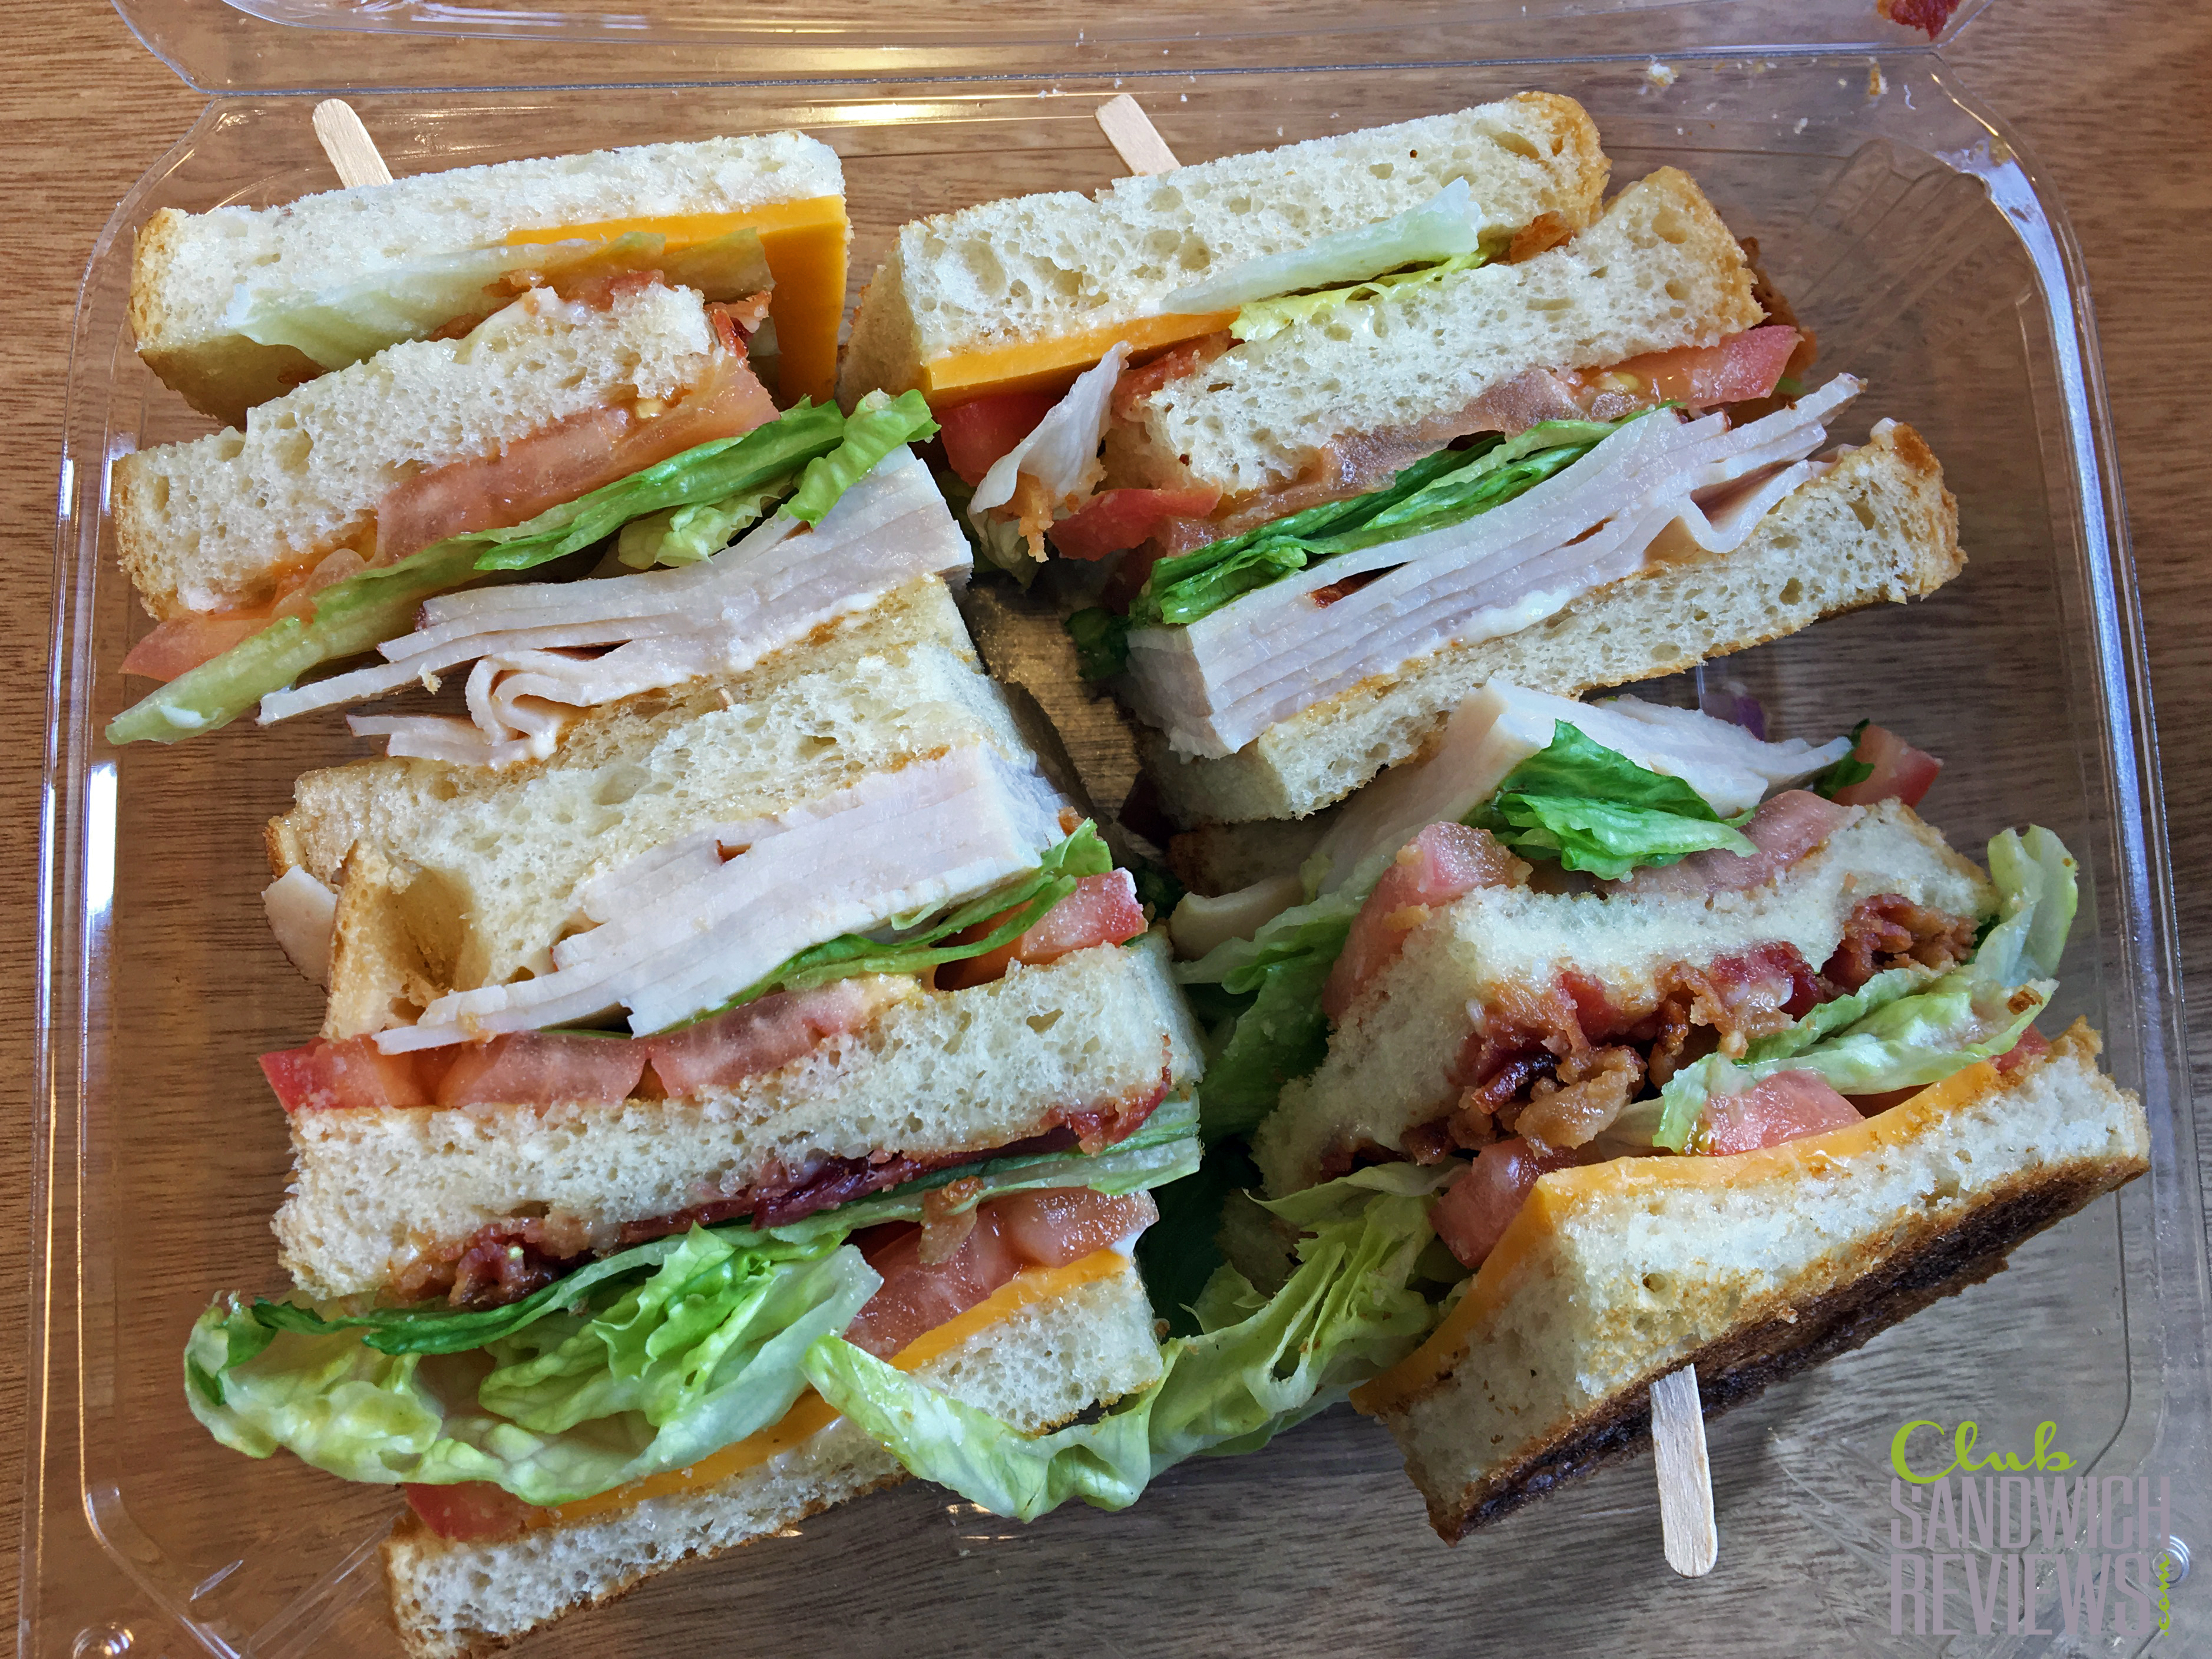 Vince's Deli, Pasadena, CA USA - Club Sandwich Reviews